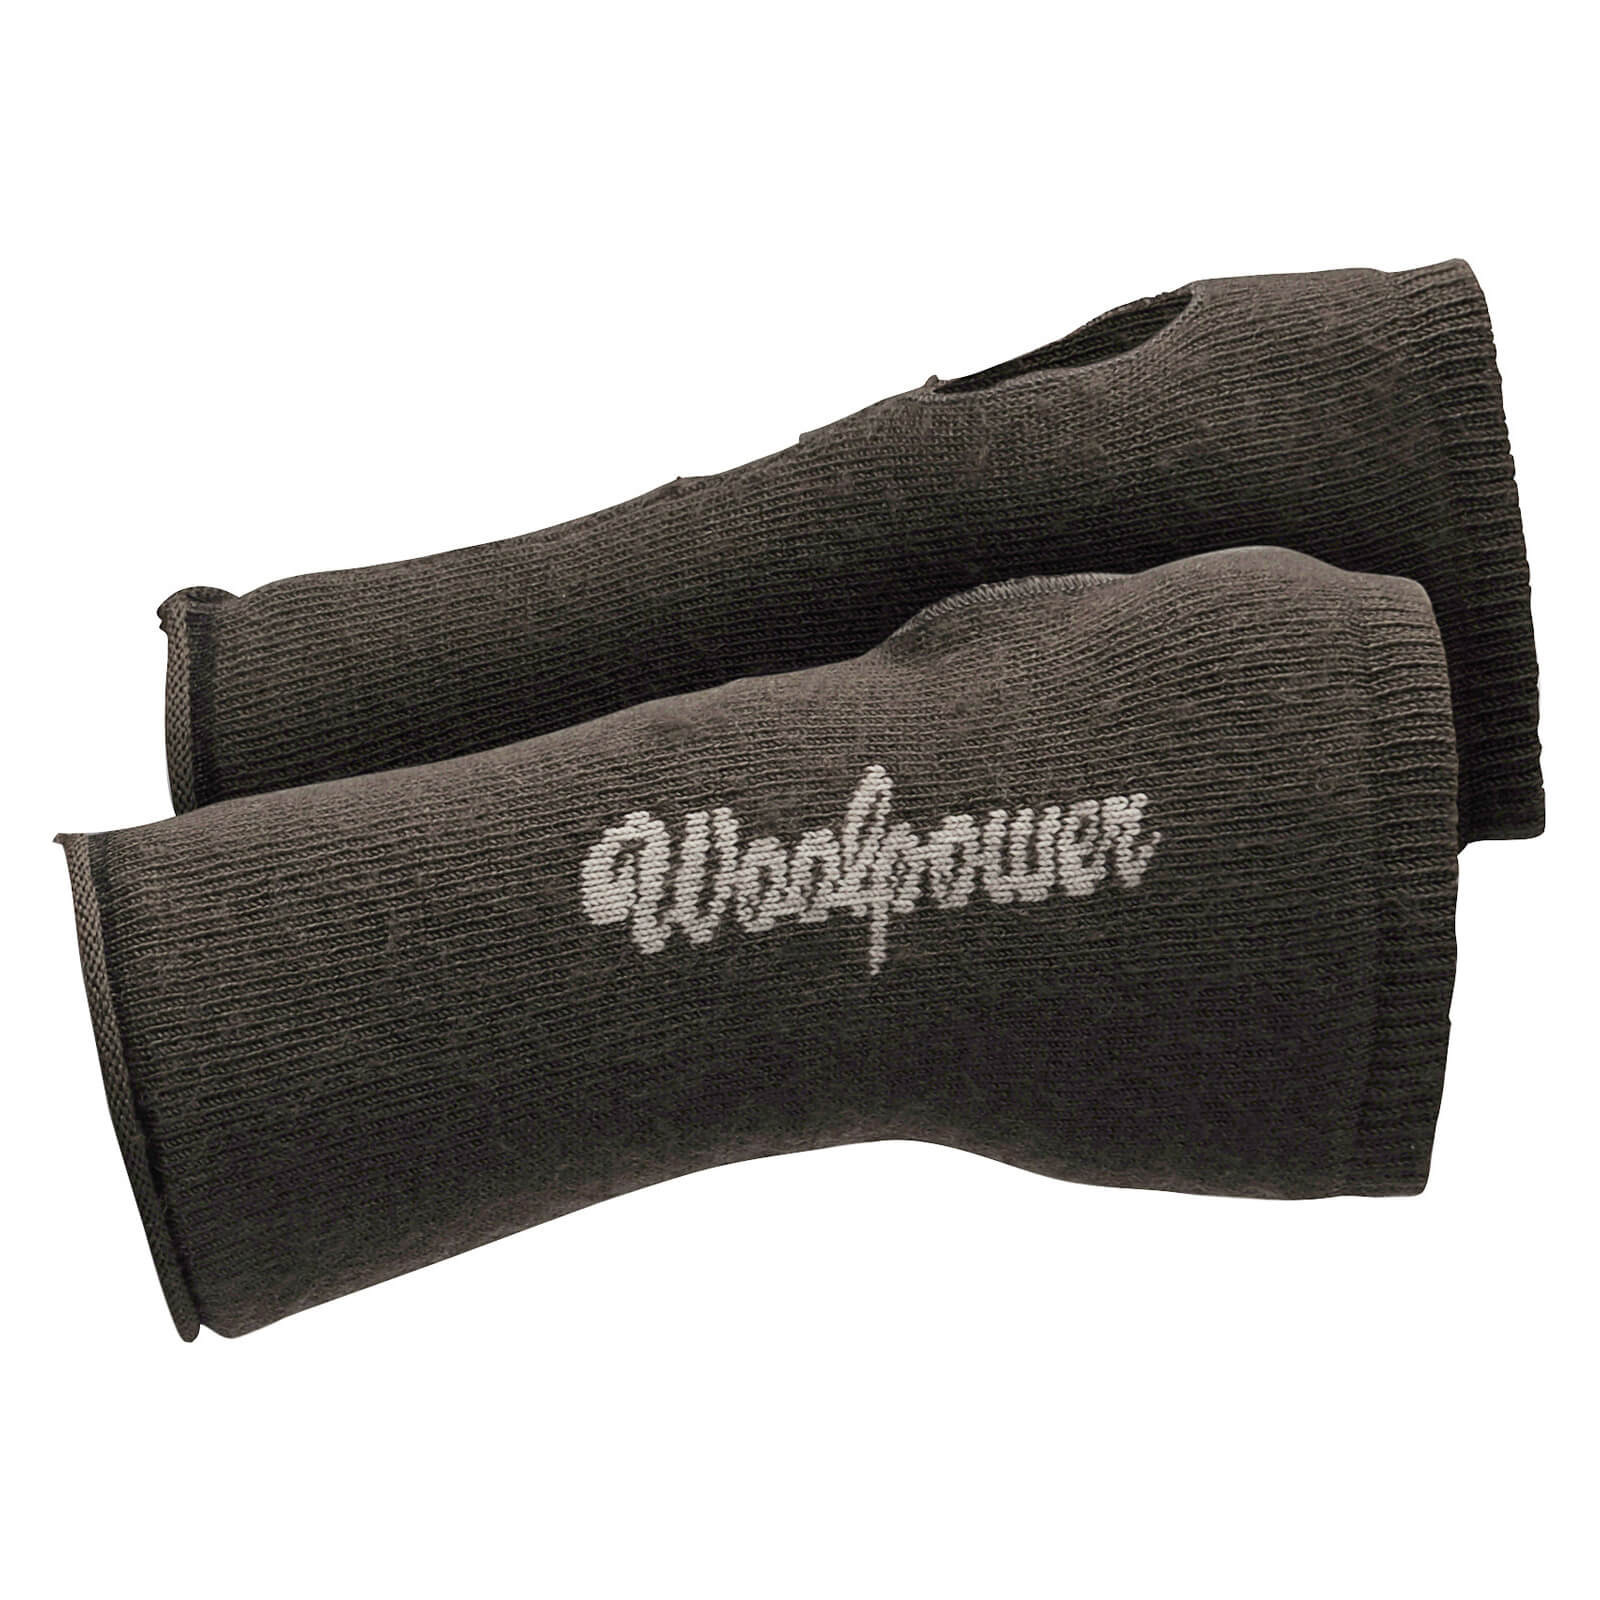 Woolpower Wrist Gaiter 200, pine green